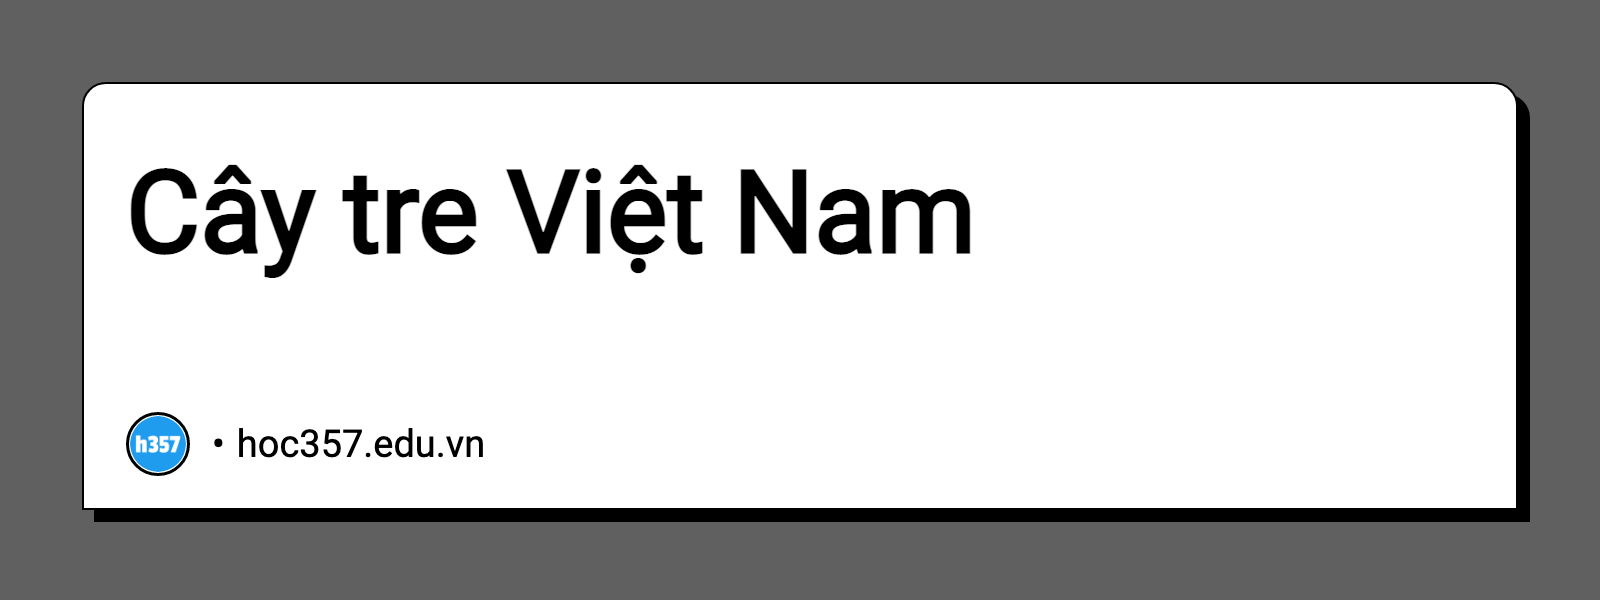 Hình minh họa Cây tre Việt Nam